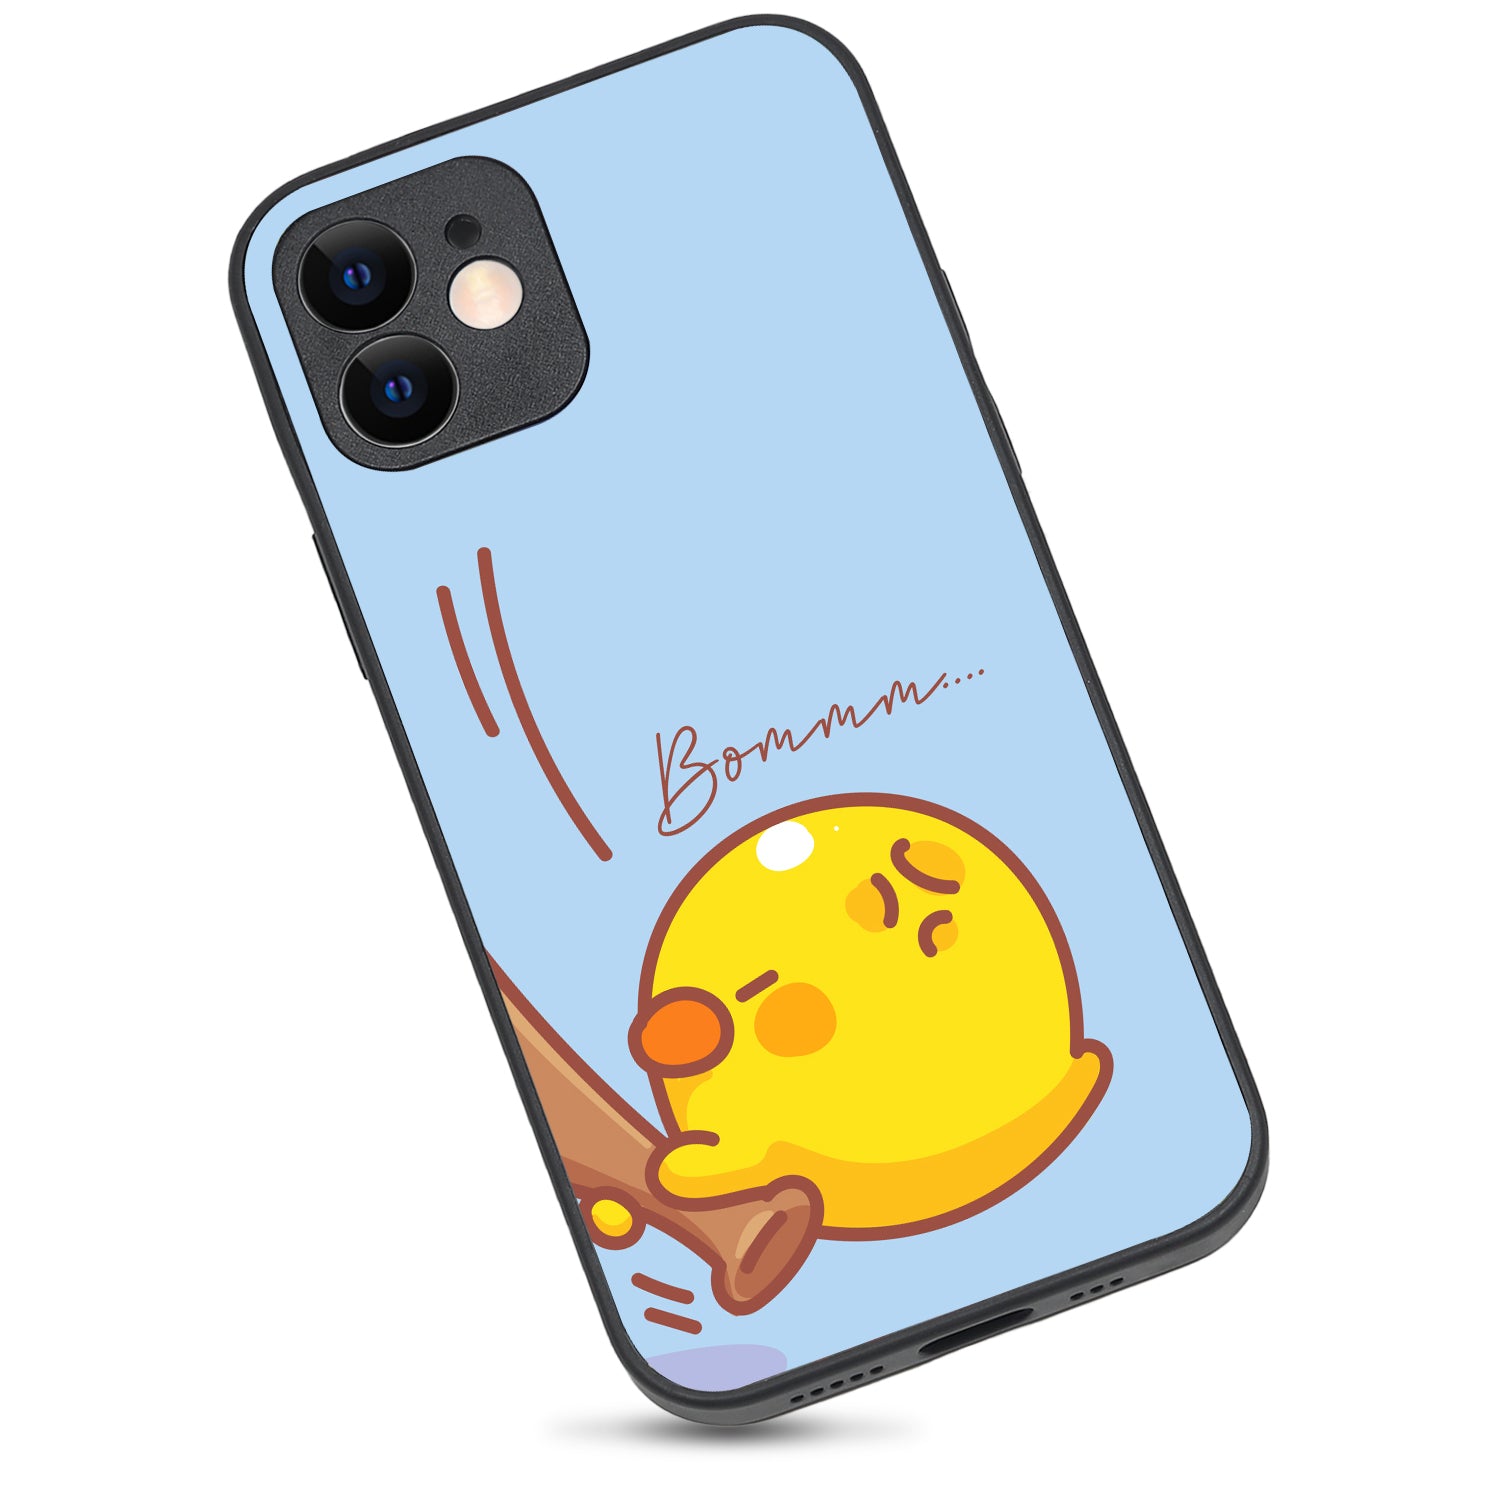 Bomm Cute Bff iPhone 12 Case